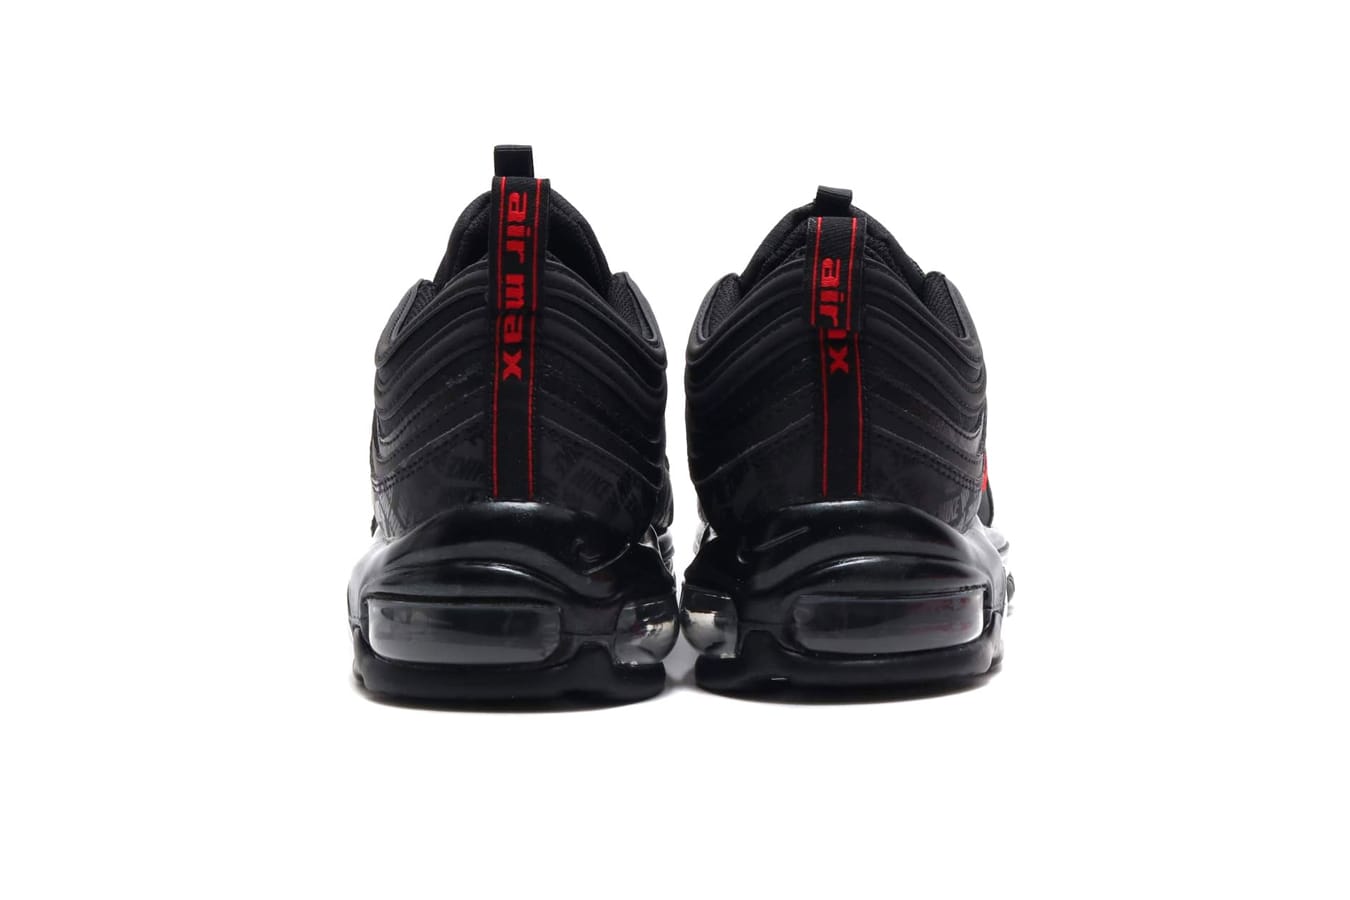 Nike Air Max 97 “Black/University Red 